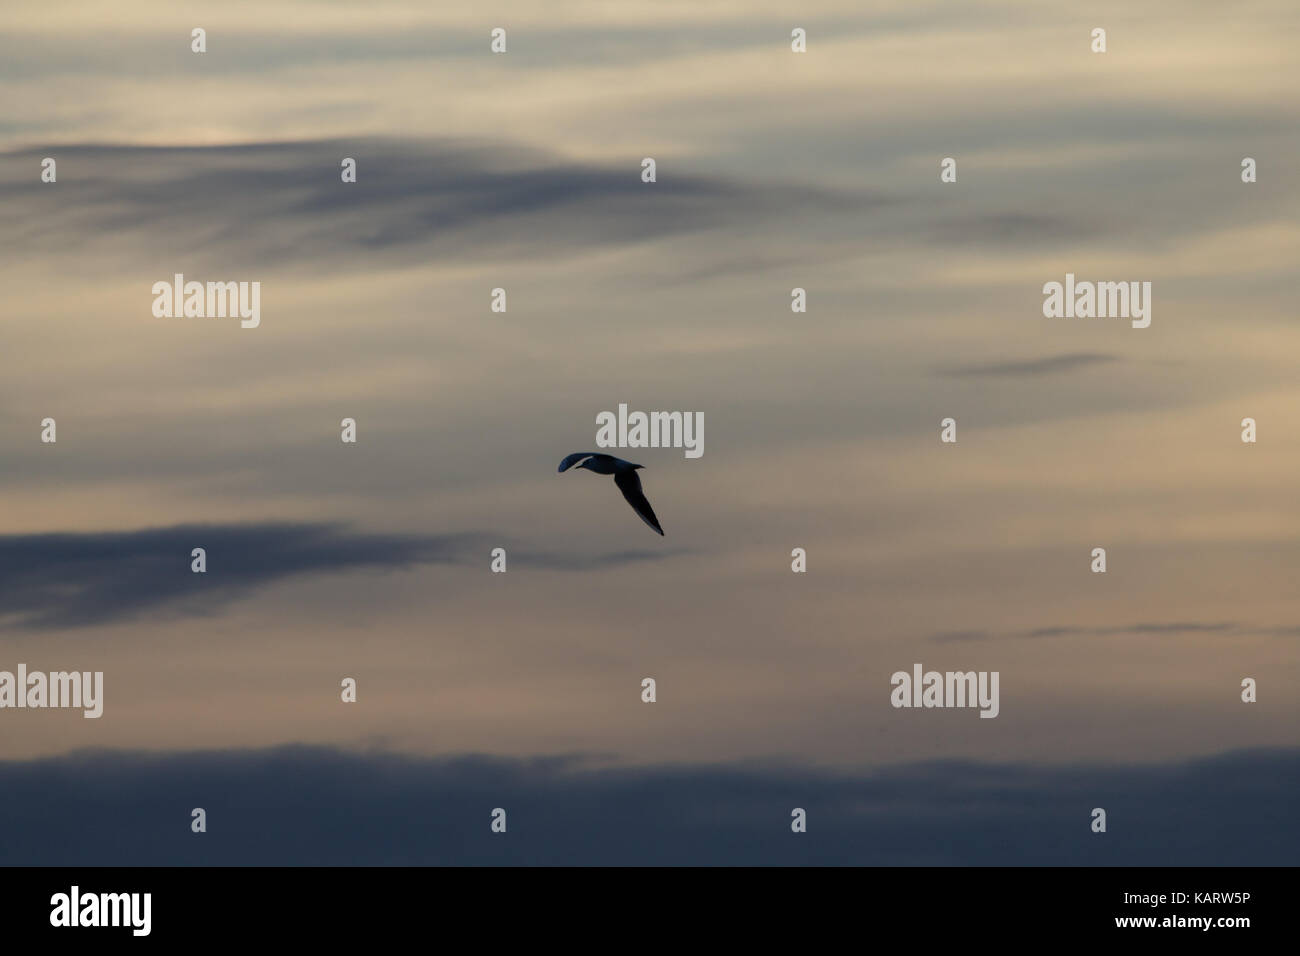 Une silhouette d'un oiseau voler contre un ciel avec nuages colorés magnifiques au coucher du soleil Banque D'Images